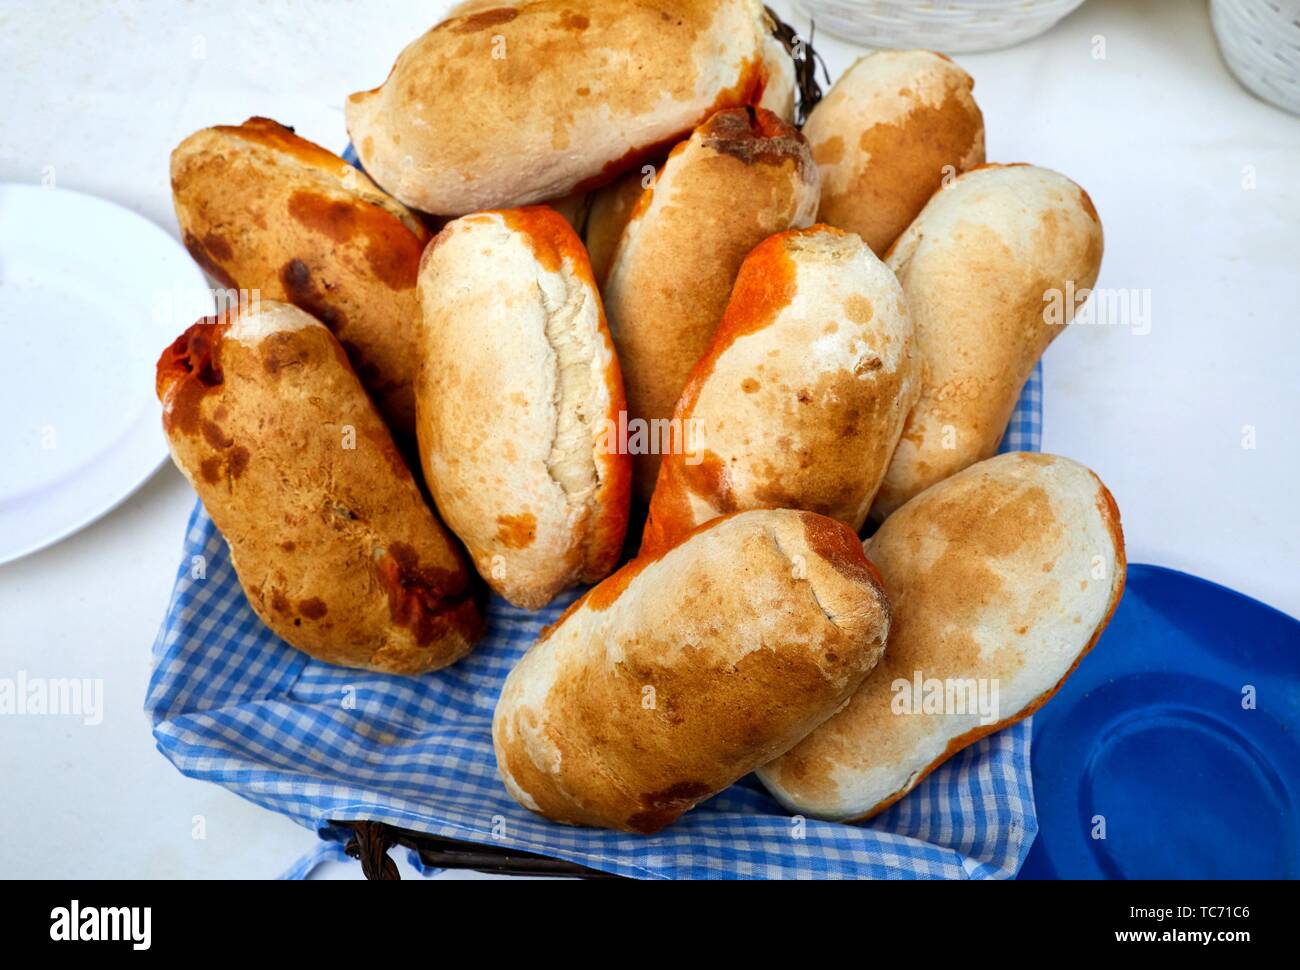 Breads stuffed with chorizo, folklore fair of Santo Tomas, Donostia, San Sebastian, Gipuzkoa, Basque Country, Spain, Europe Stock Photo